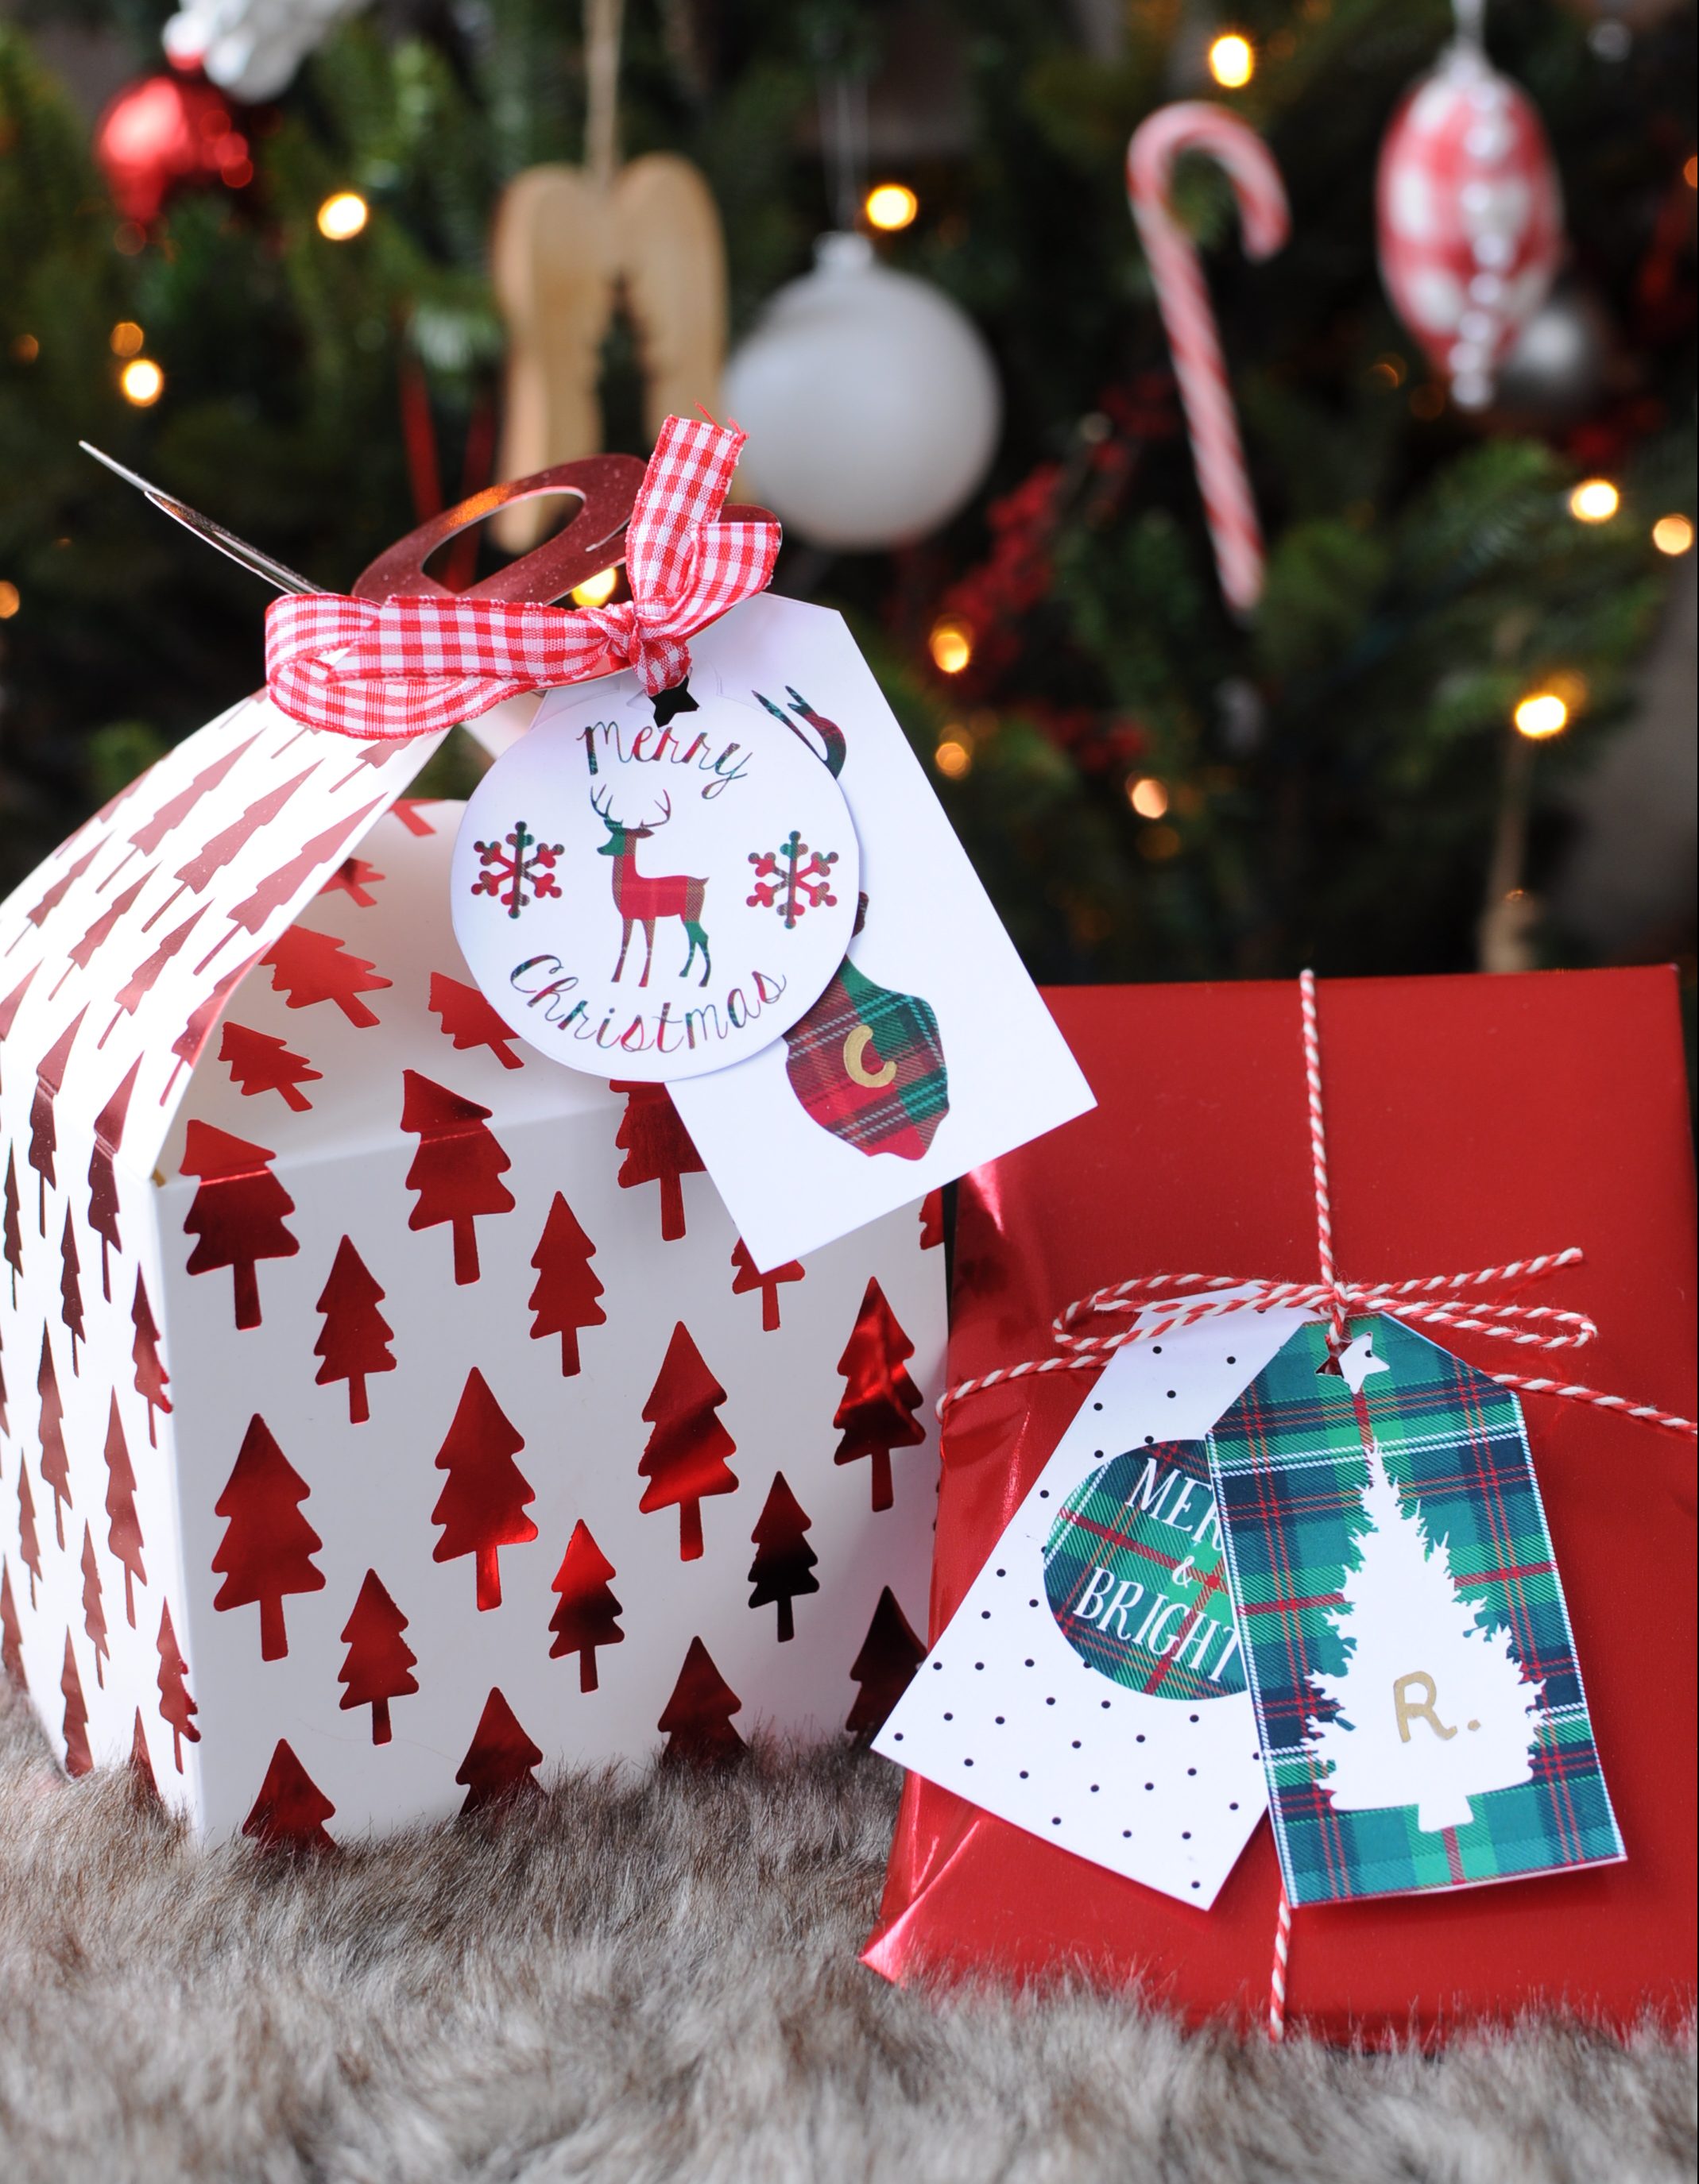 Verwonderend Kerst cadeaulabels: gratis downloaden & printen - Christmaholic.nl QR-77